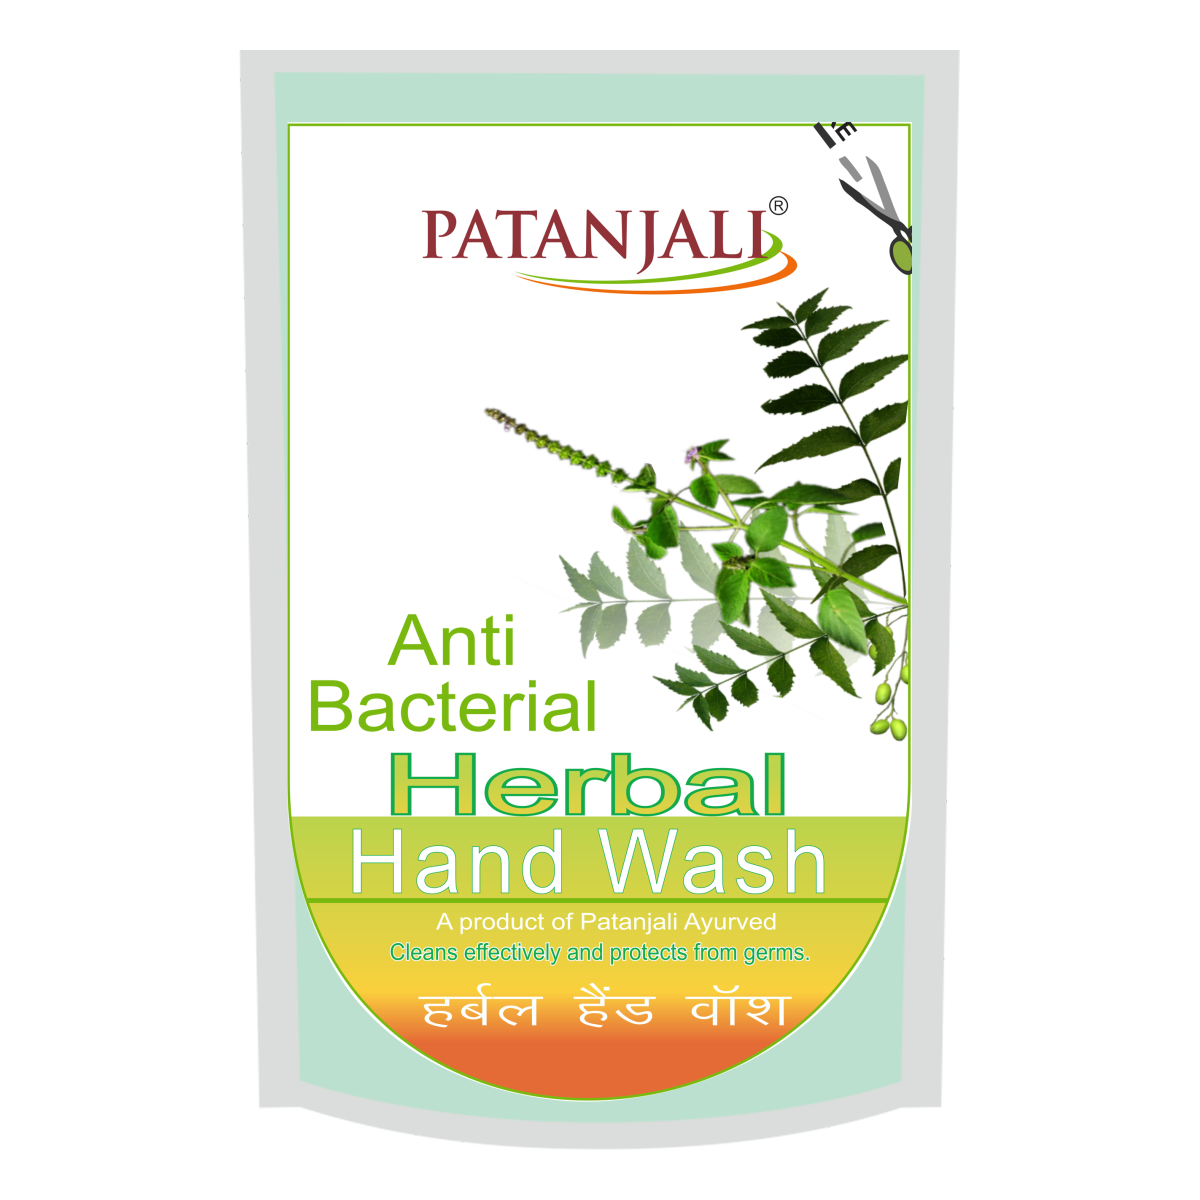 Patanjali Herbal Hand Wash (Anti Bacterial) - Refill